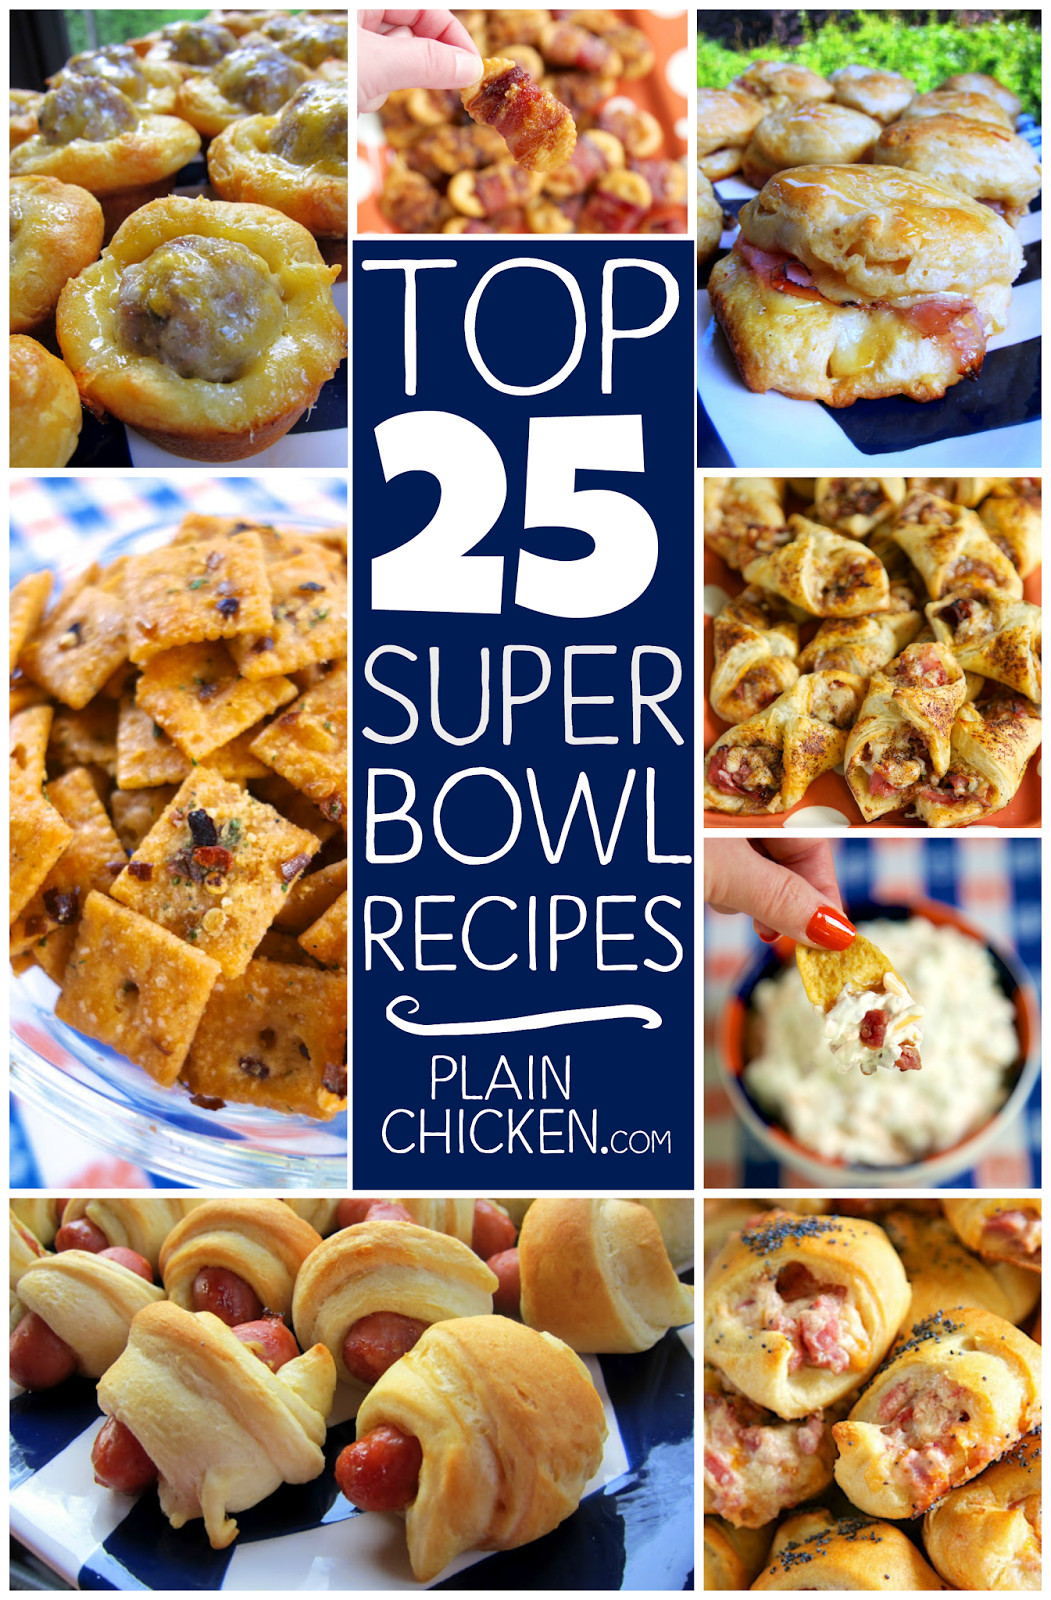 Best Super Bowl Recipes
 Top 25 Super Bowl Recipes